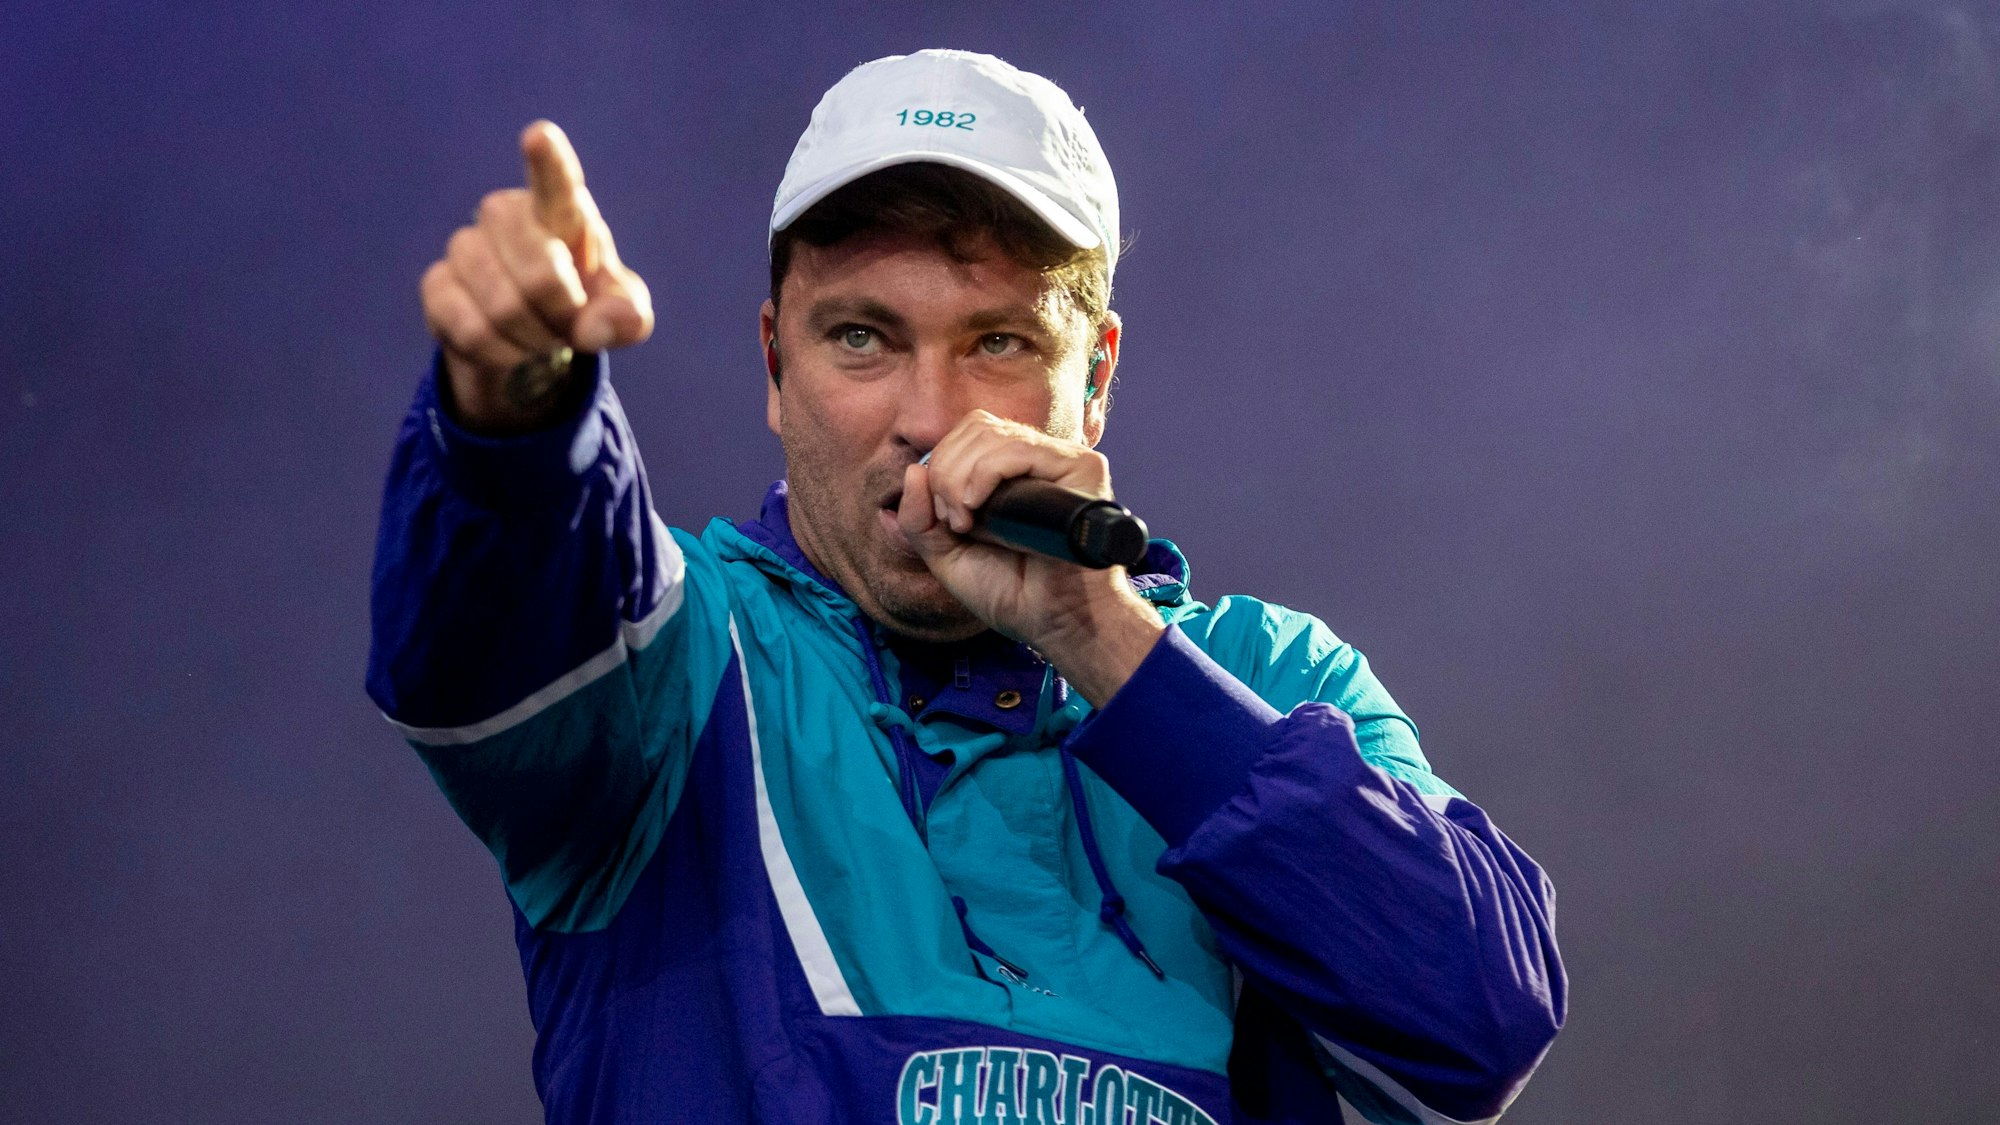 Der deutsche Rapper Marteria (40) bei einem Auftritt auf einer Bühne. Er trägt eine Kappe und hält ein Mikrofon in der Hand.